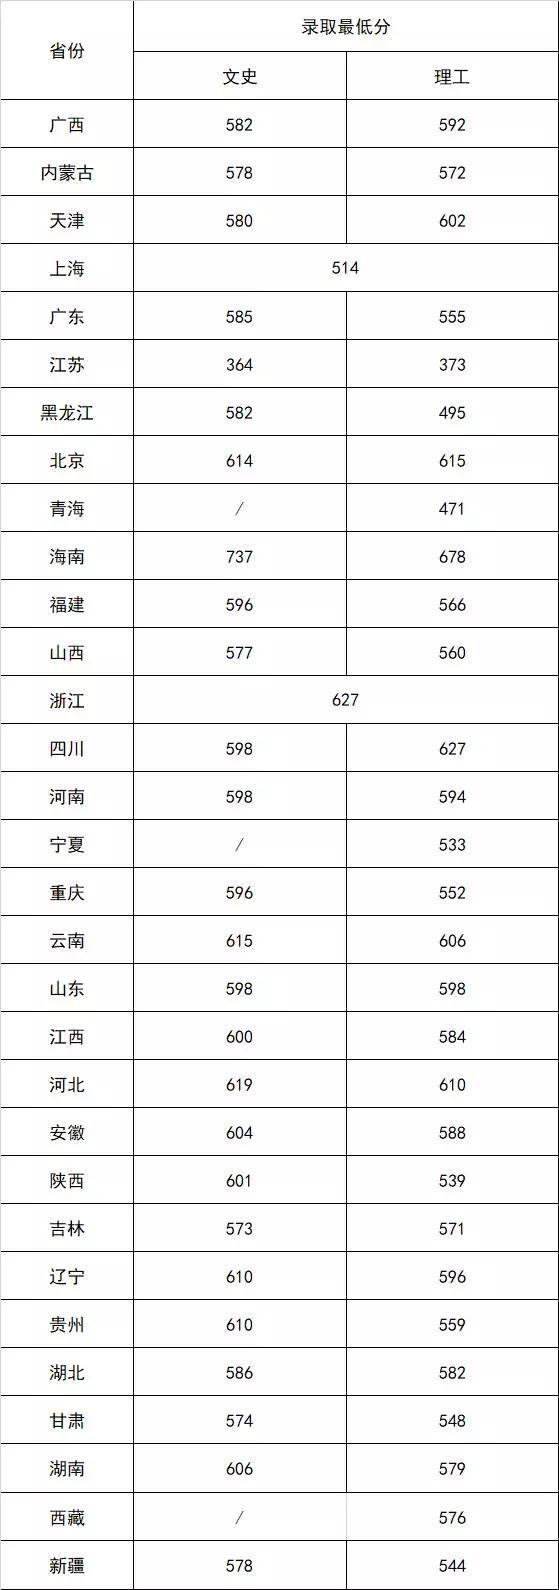 北京林业大学2019年高考录取结果查询（第五批公布）——最终结果